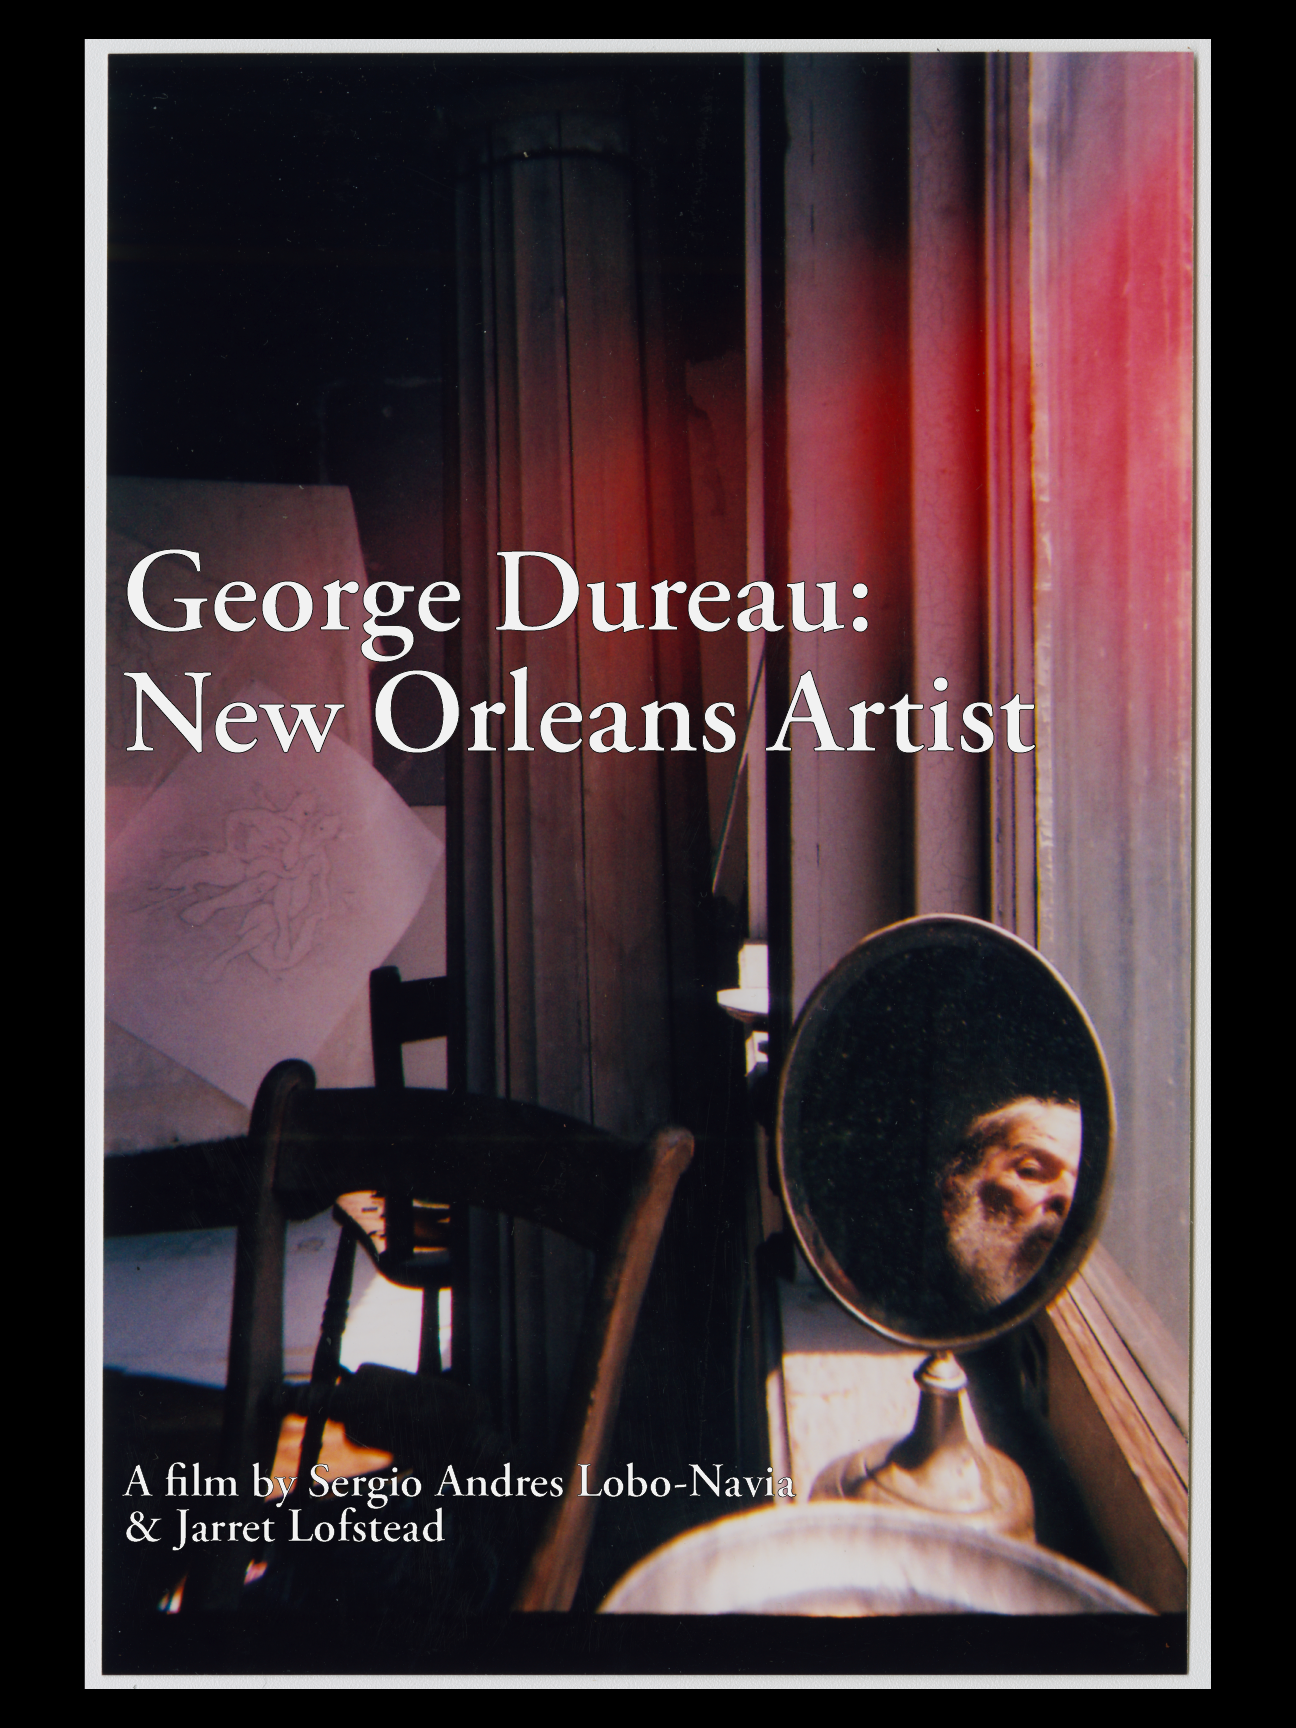 George Dureau: New Orleans Artist flim poster